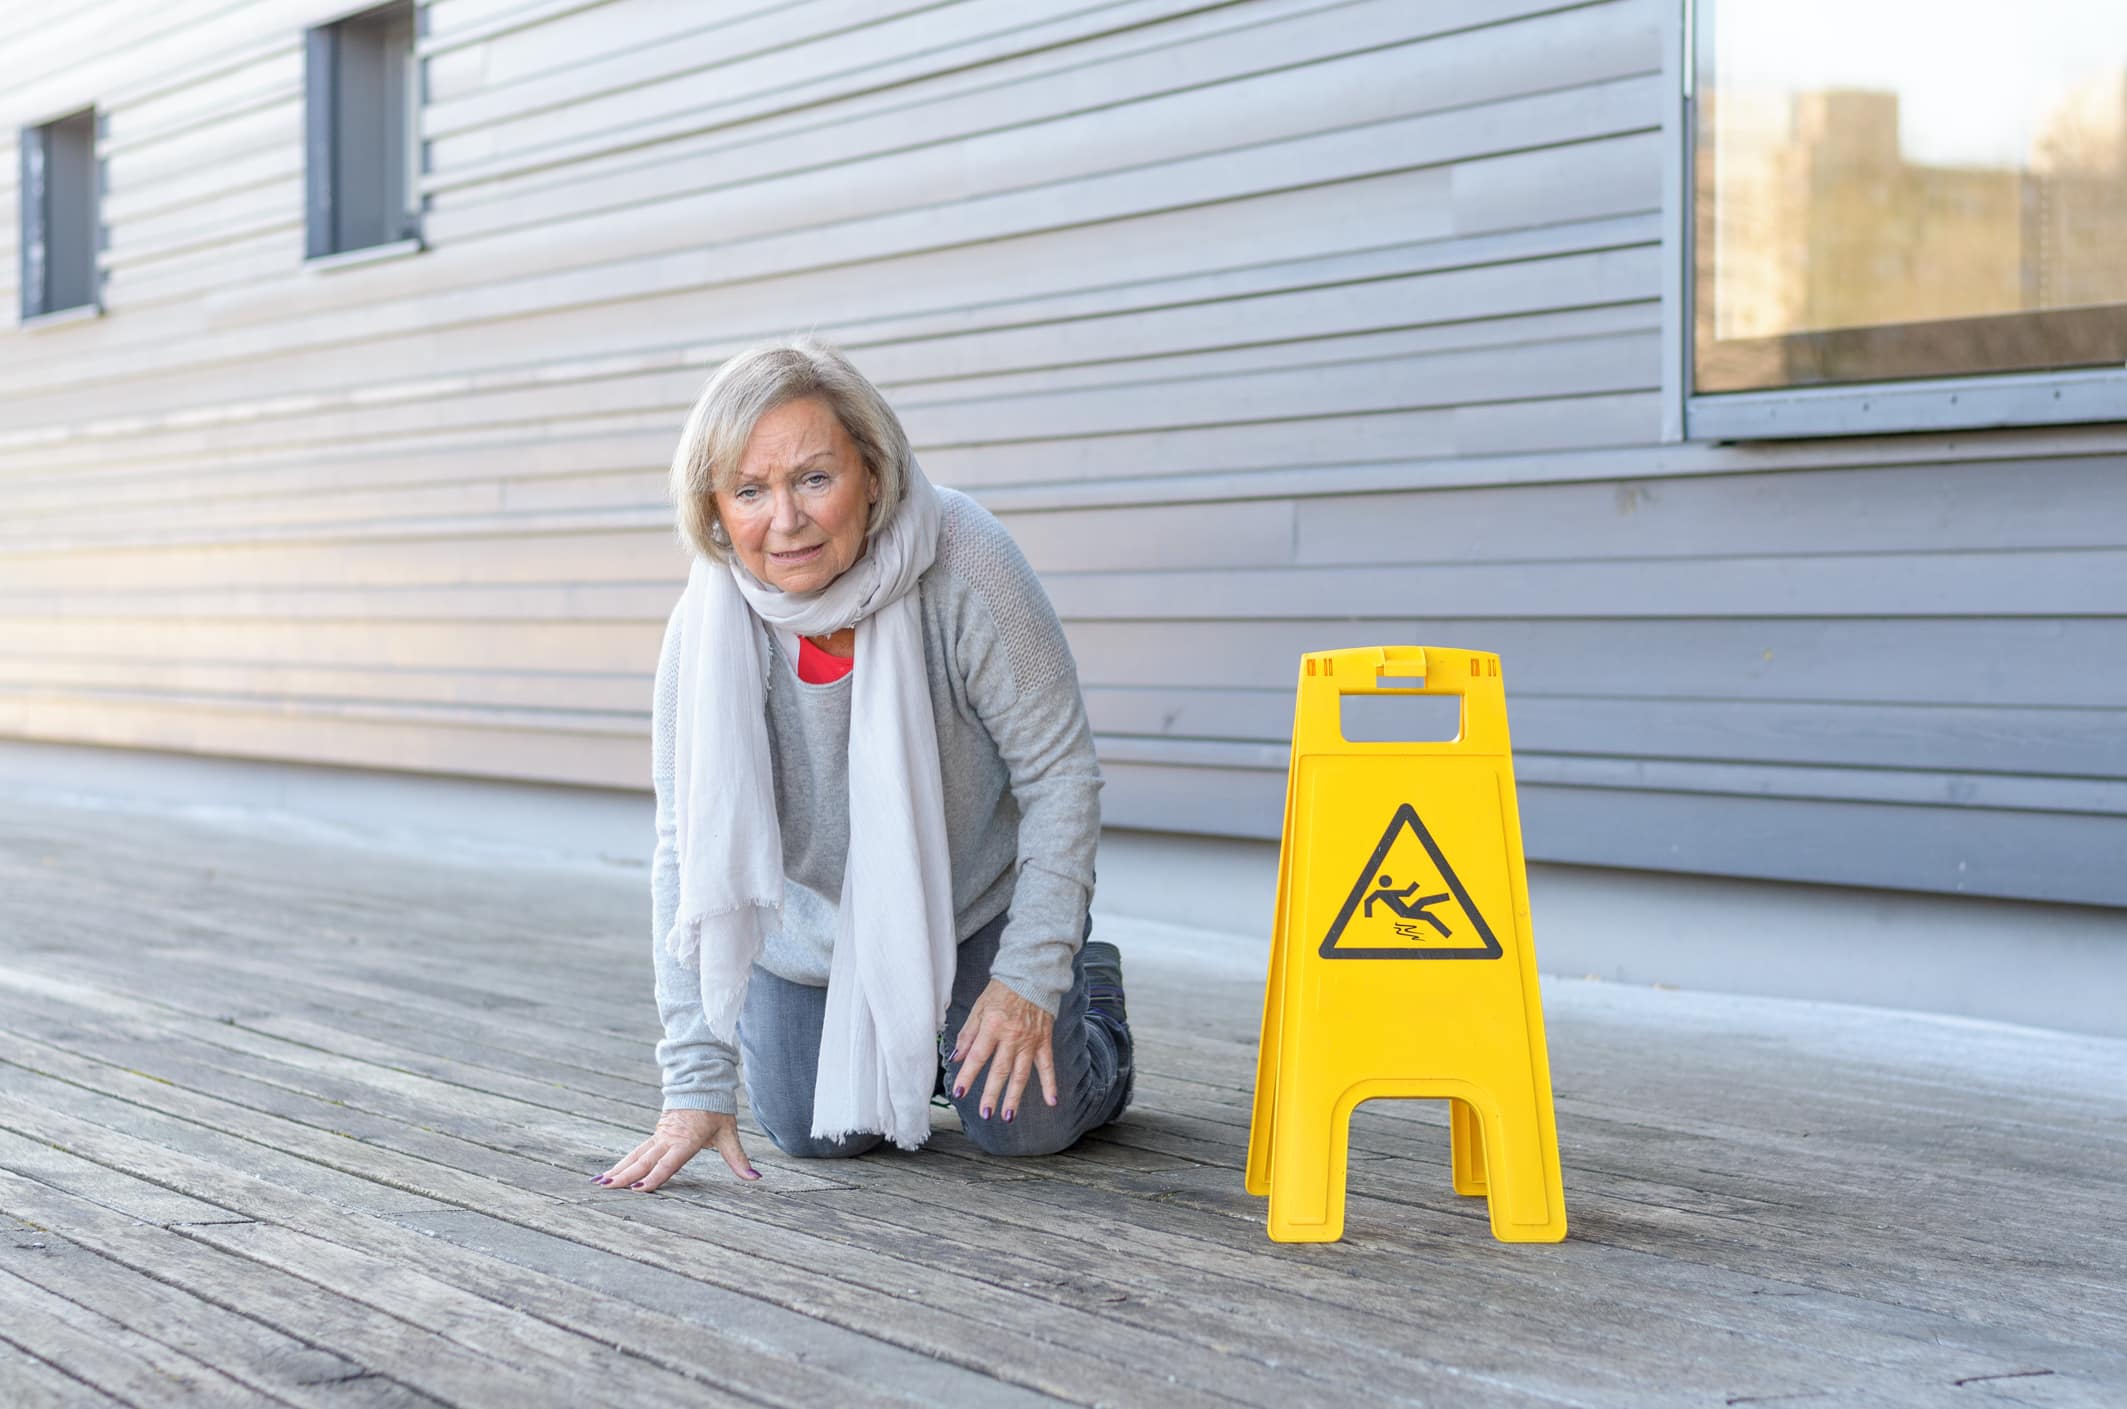 non-slip flooring for the elderly